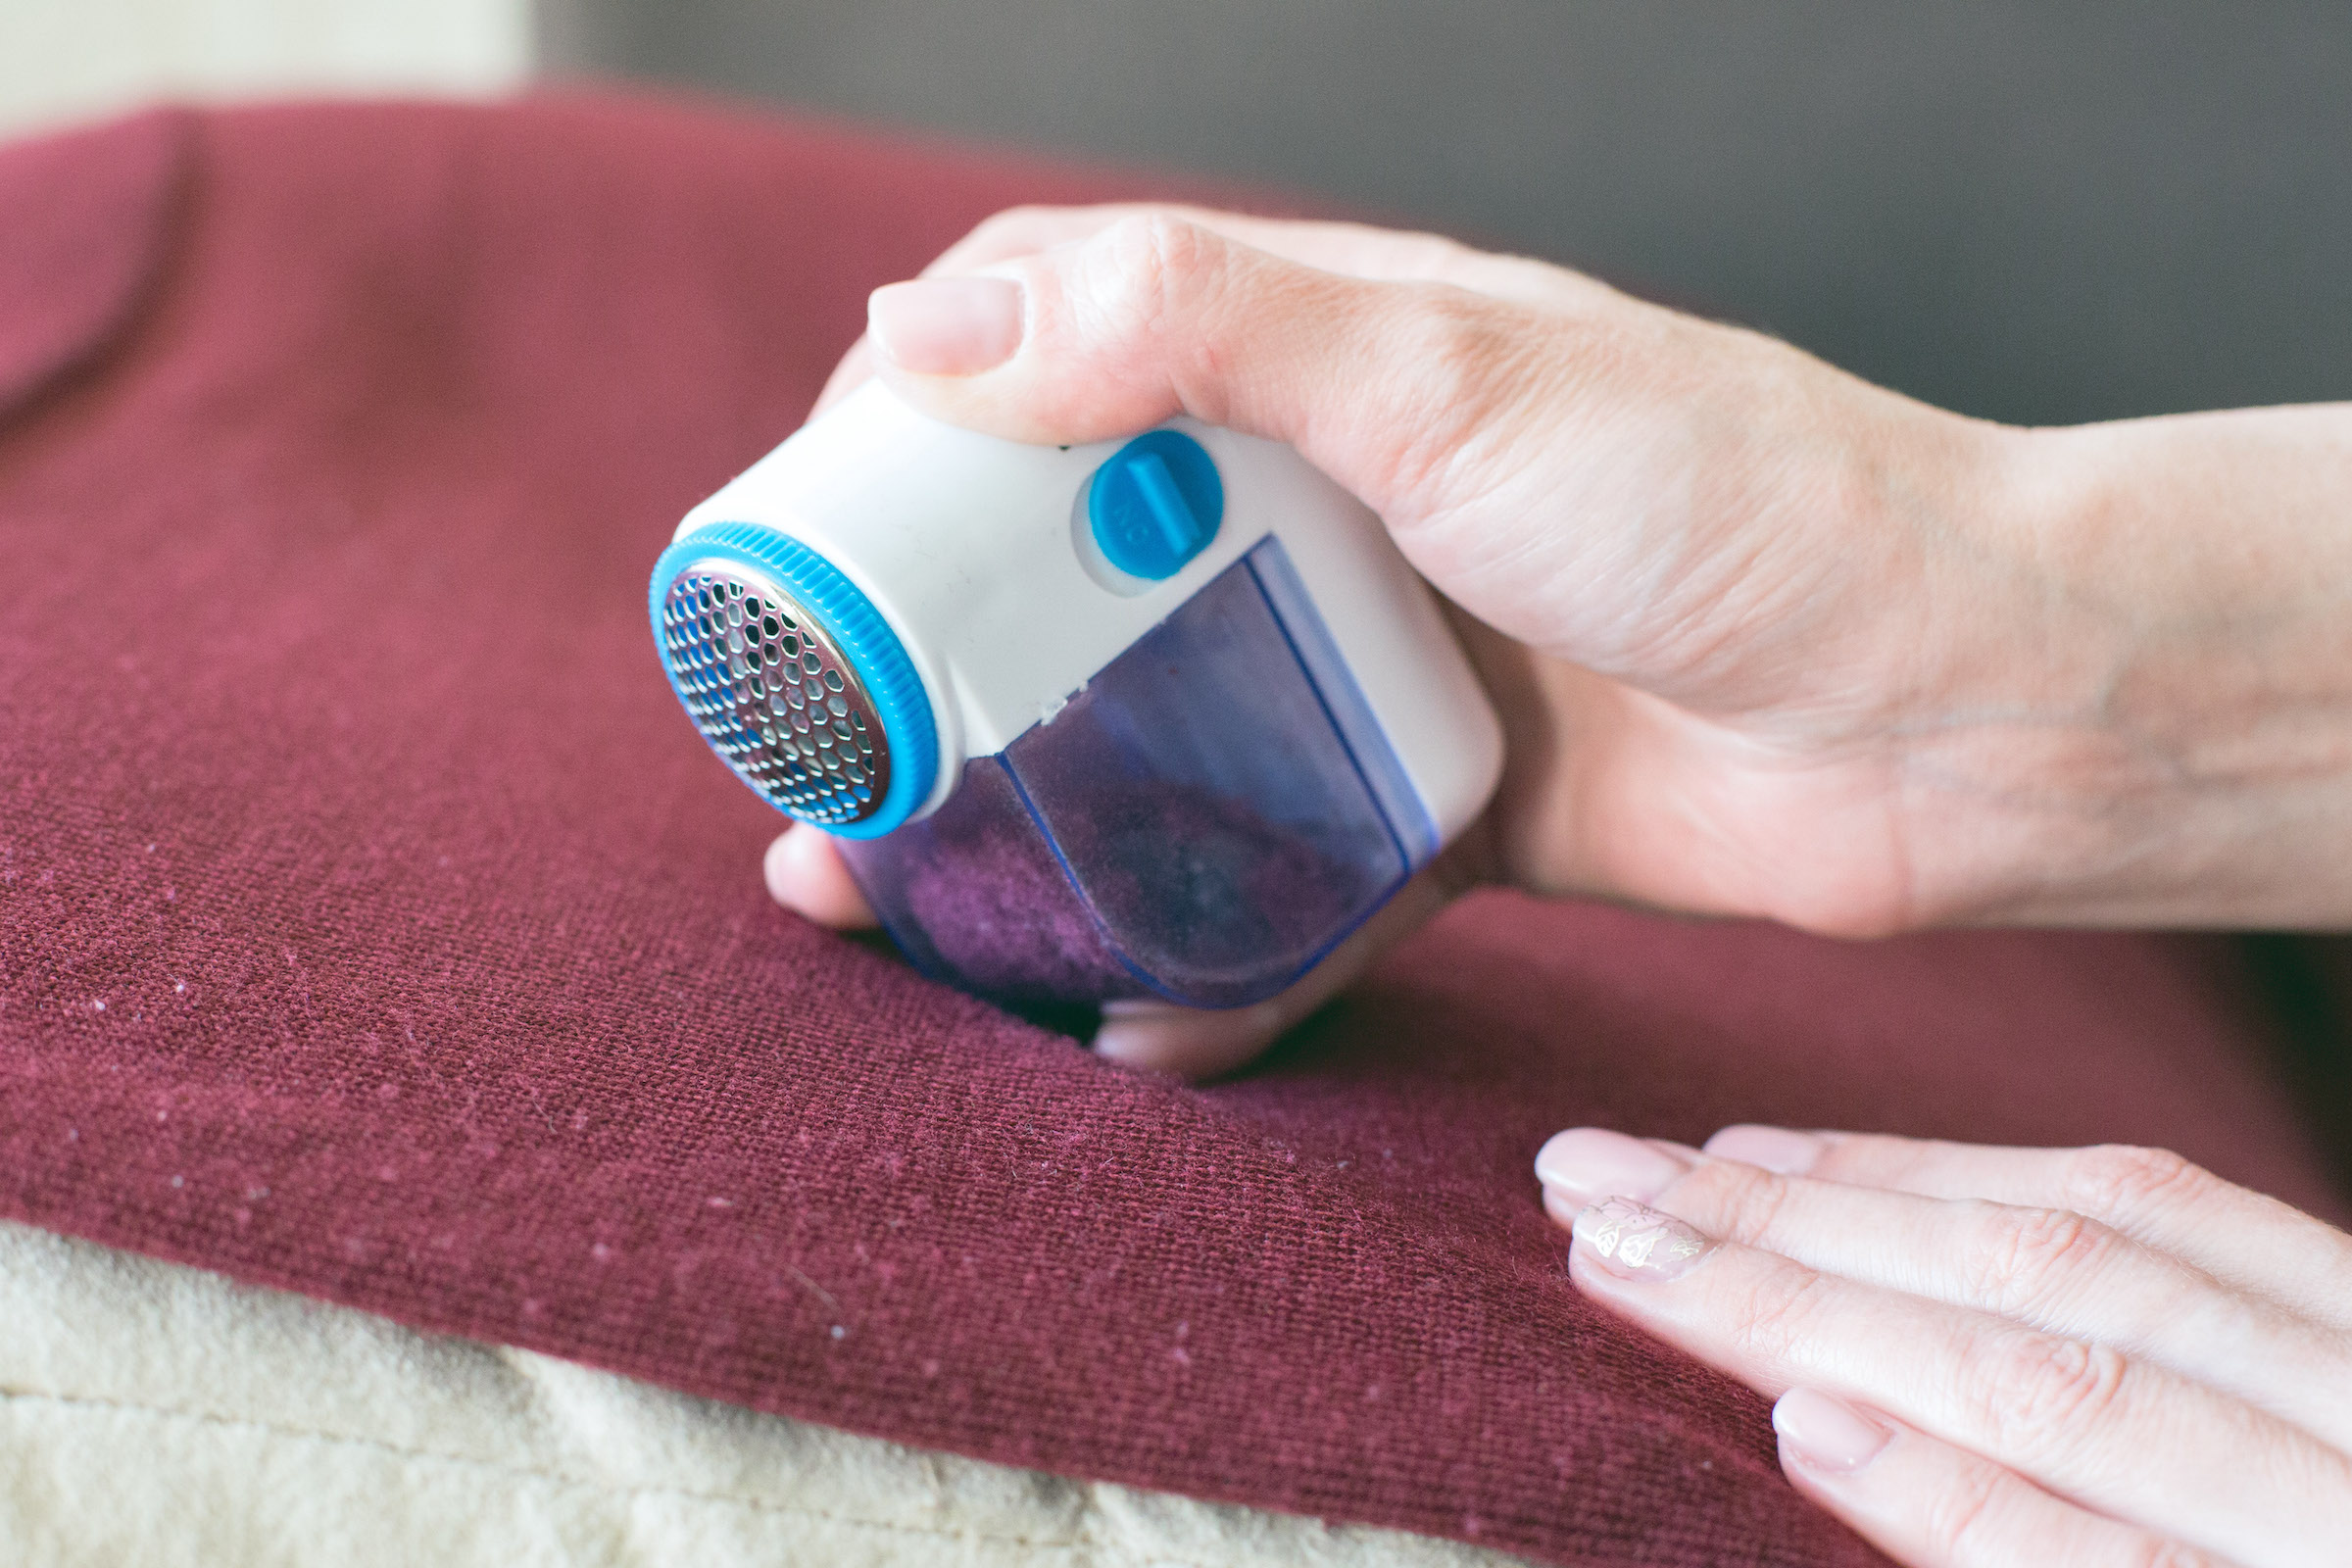 Trucos caseros: ¿cómo eliminar las bolitas de pelusa de mi ropa